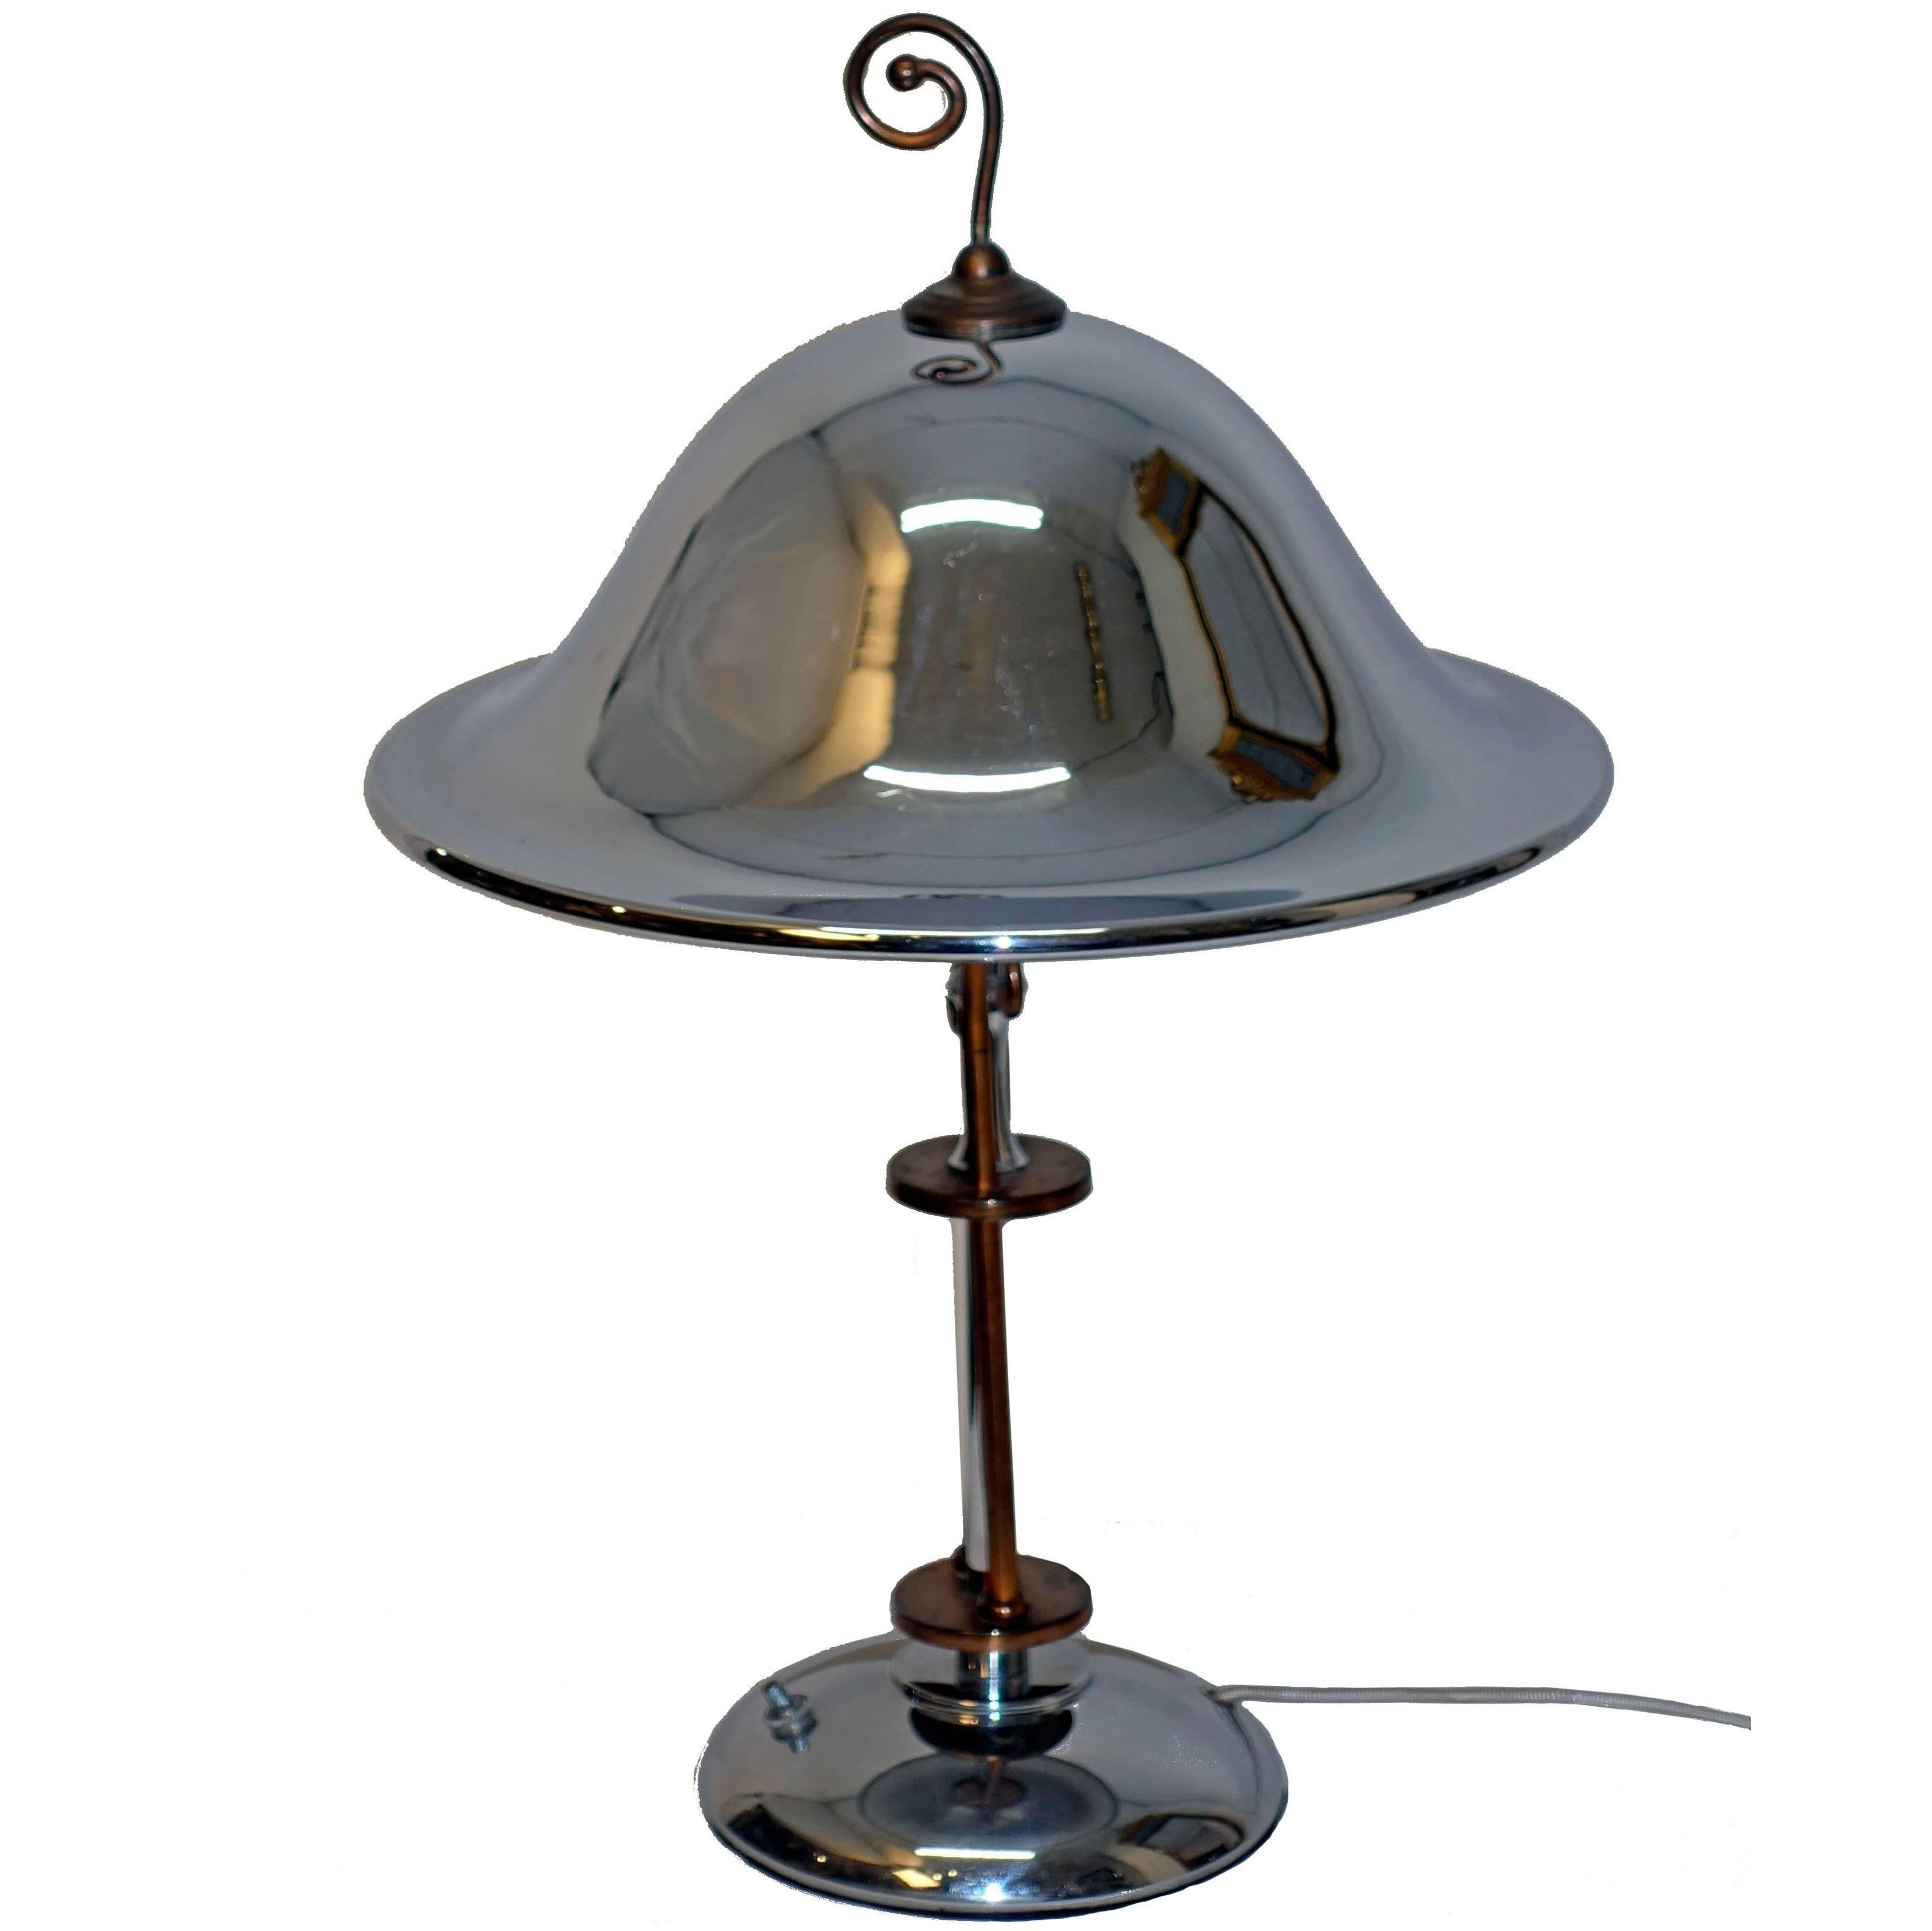  Lampe Art déco en chrome et cuivre, États-Unis, années 1920-1930